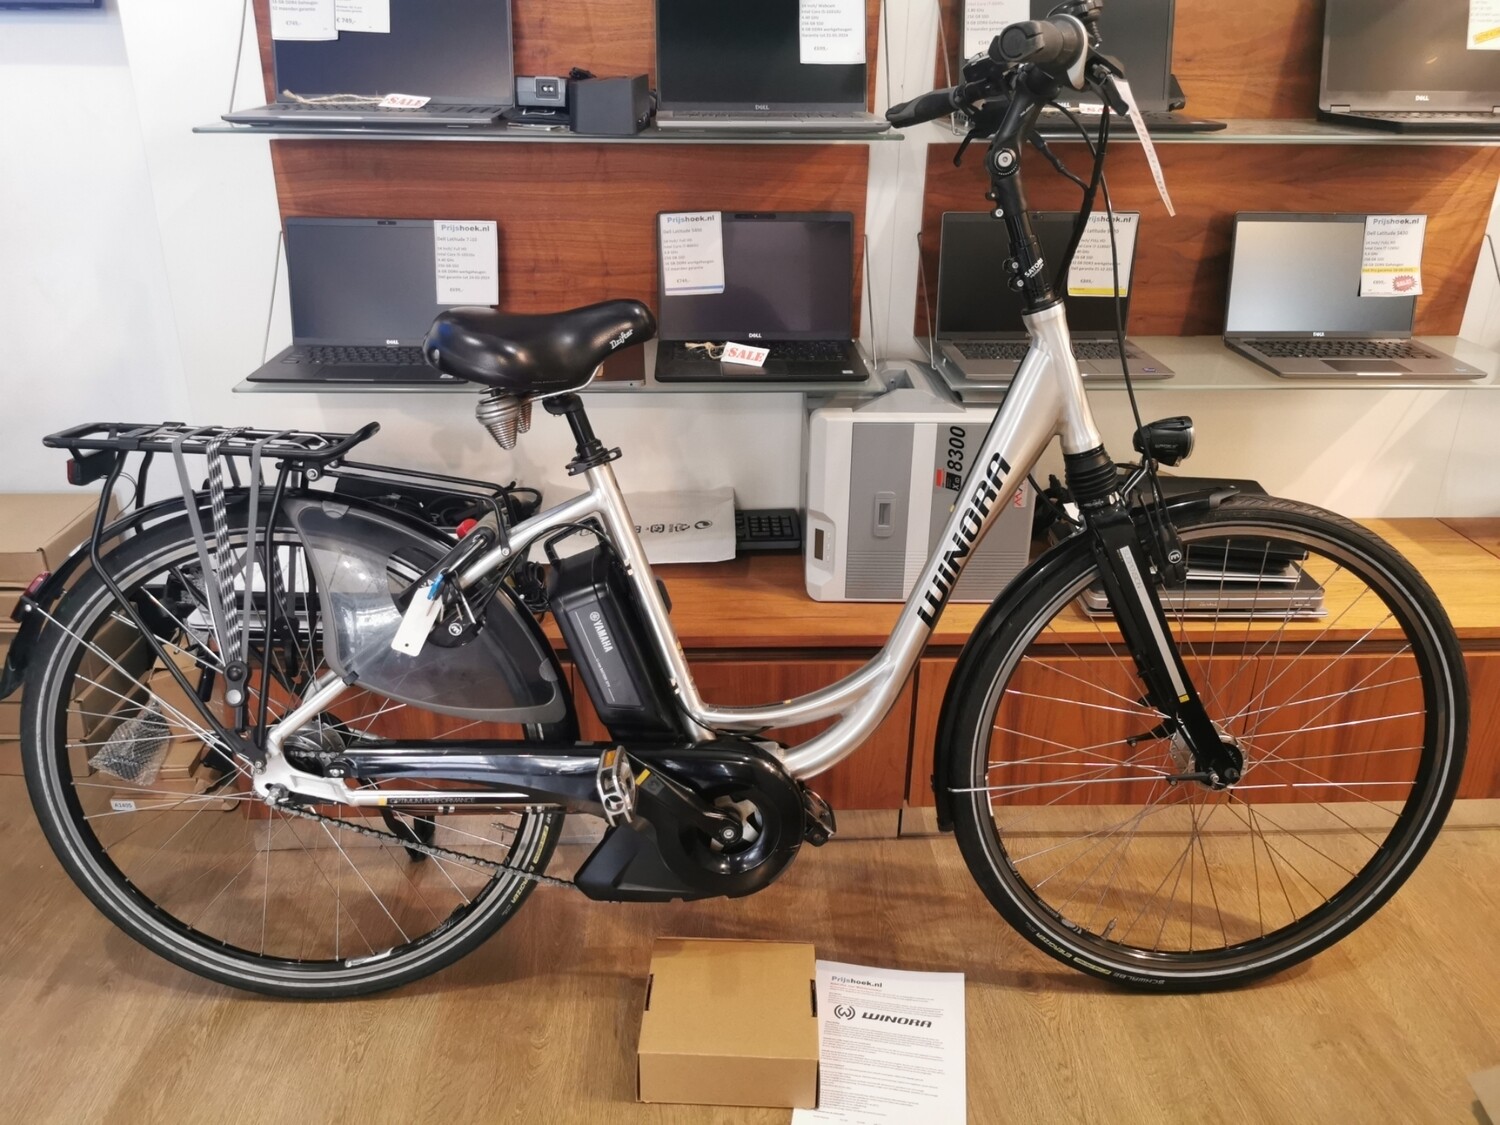 E-bike WINORA met Middenmotor en accu van YAMAHA, met garantie